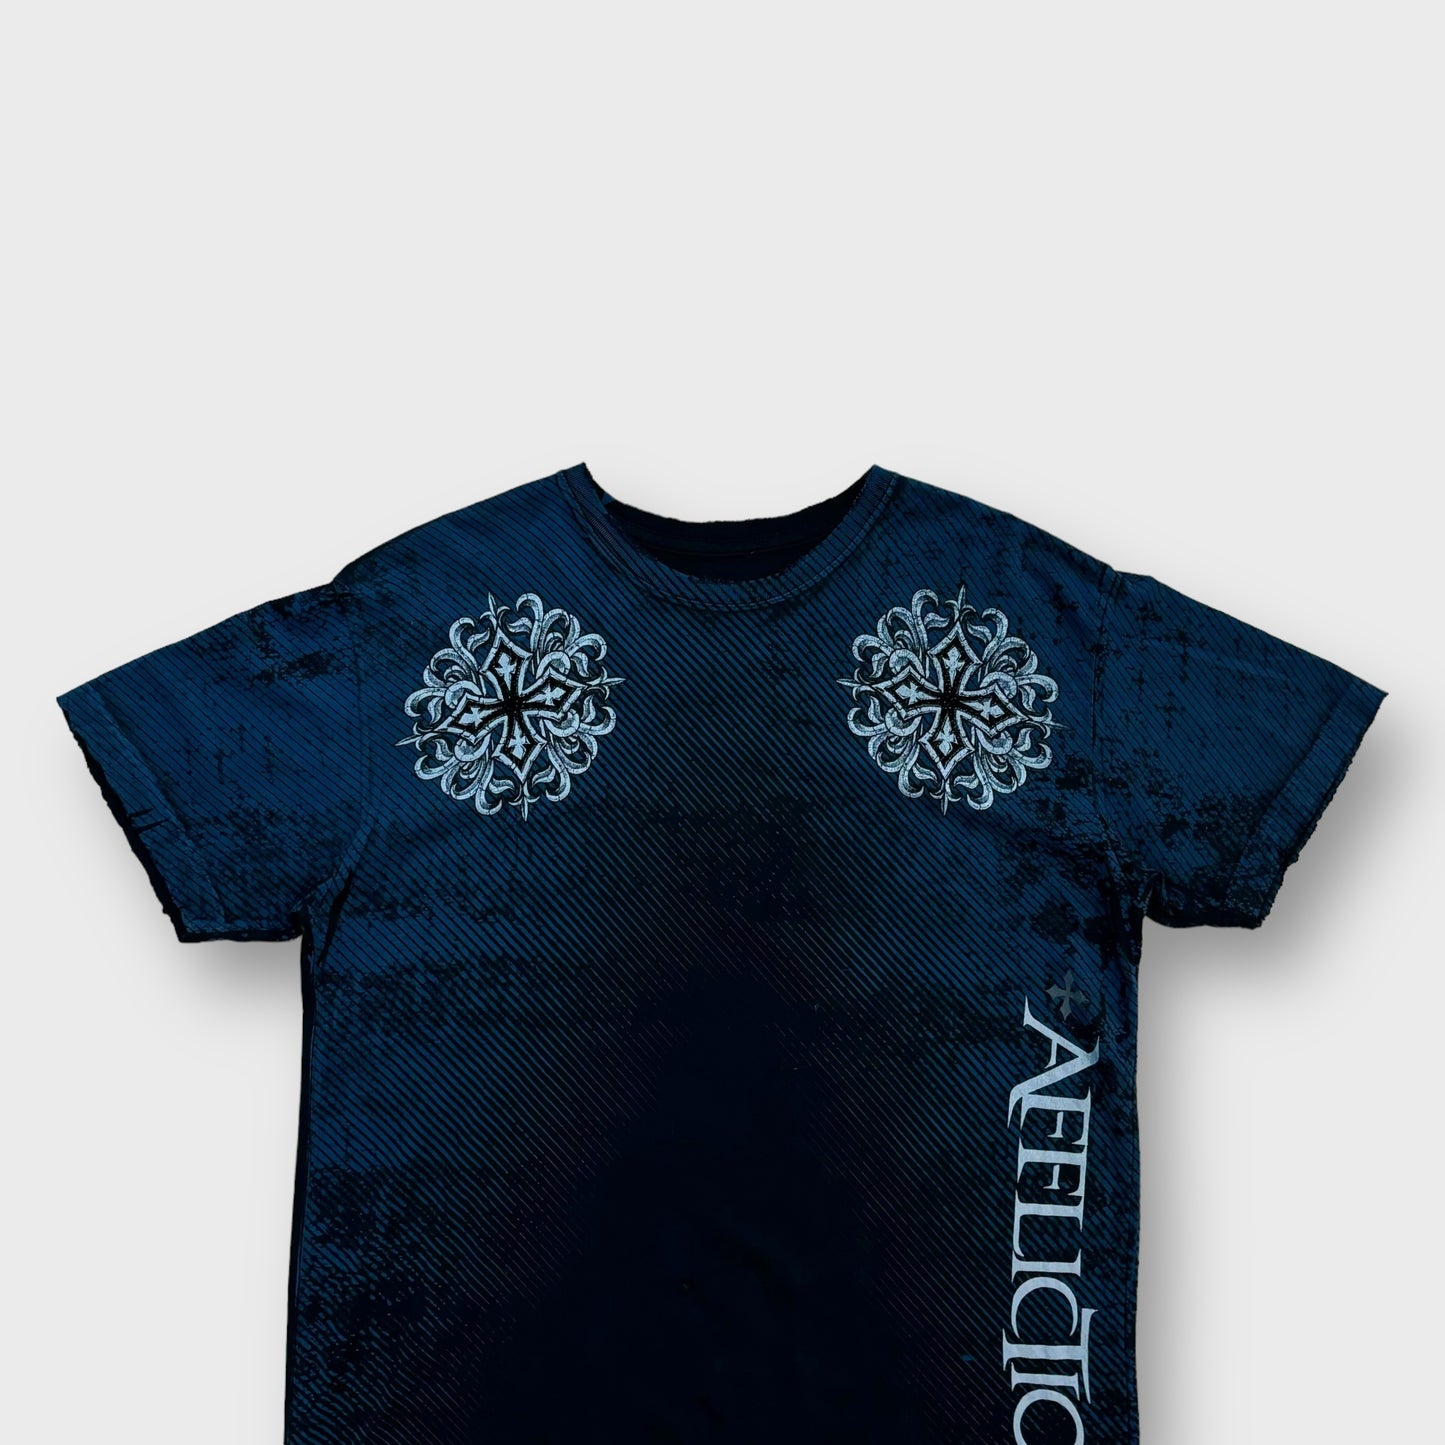 "Affliction" cross design t-shirt